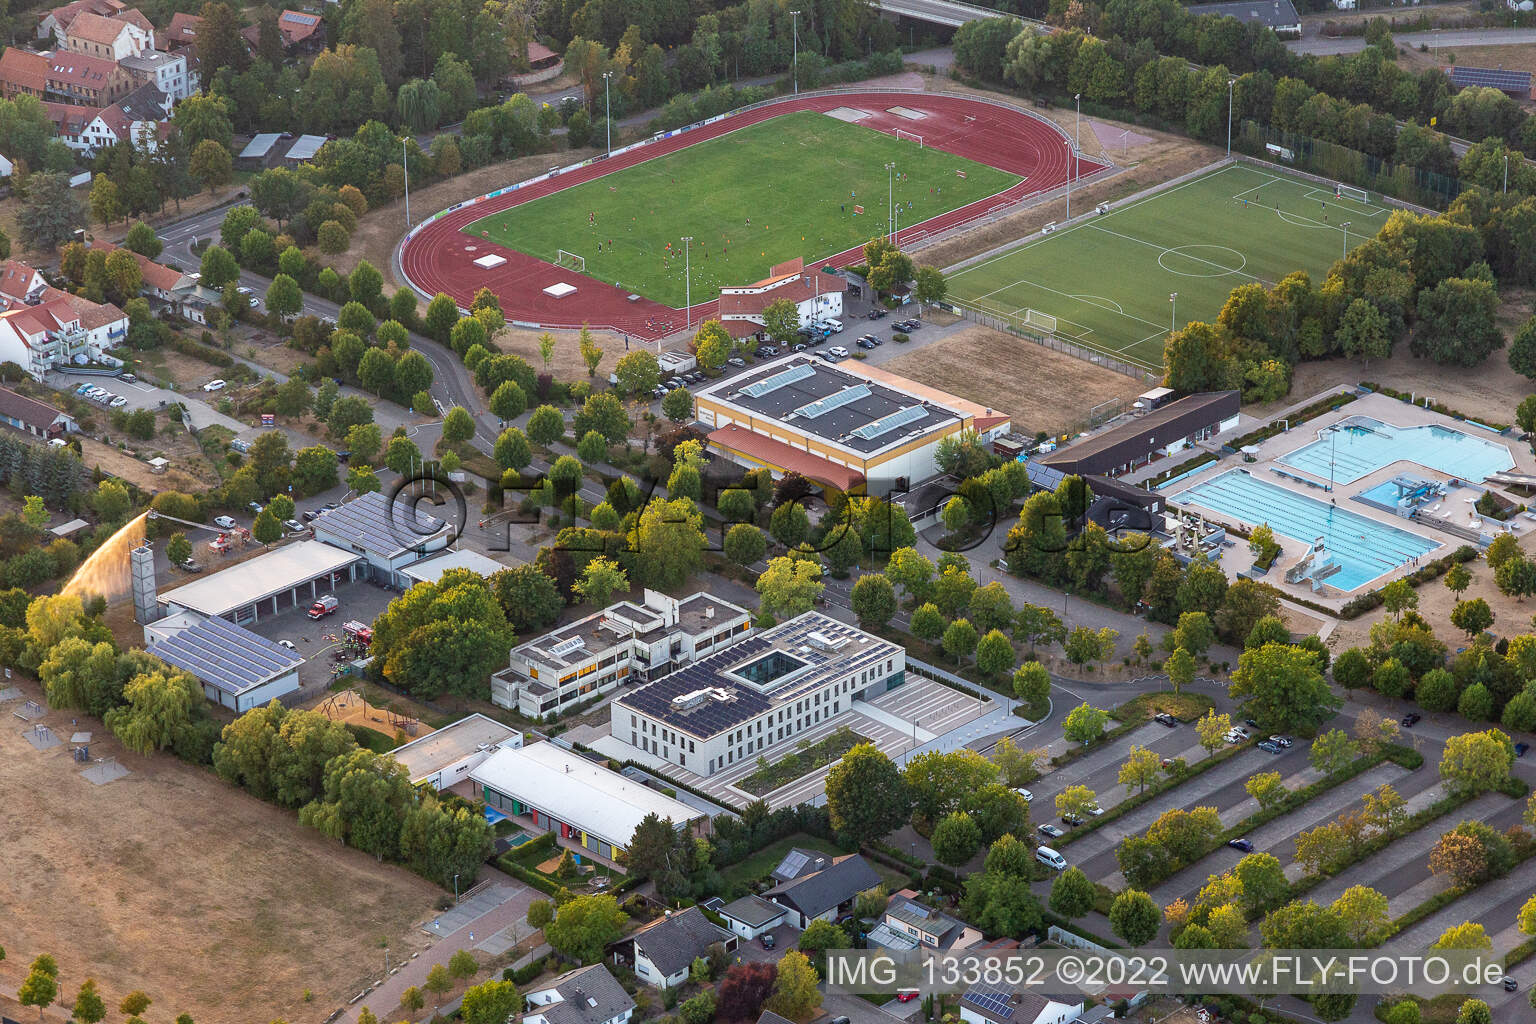 Queichtal Stadium, Queichtalhalle, Queichtalbad in Offenbach an der Queich in the state Rhineland-Palatinate, Germany